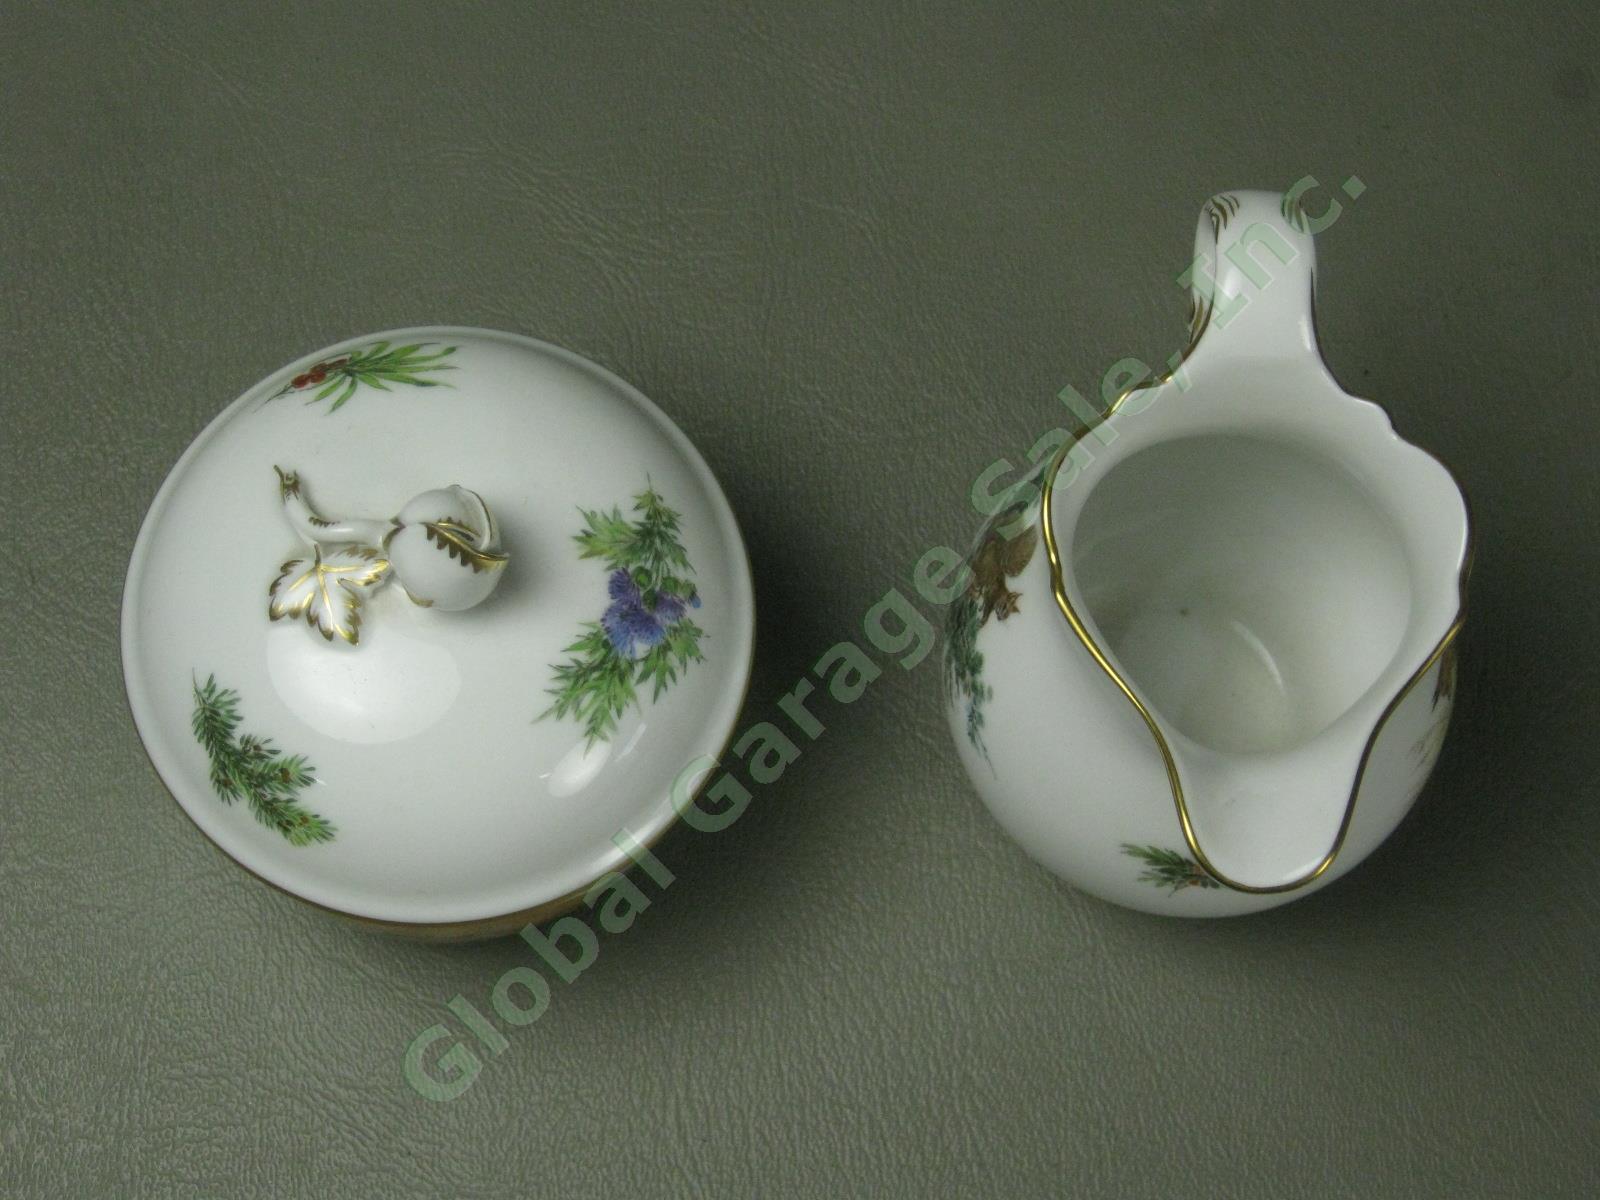 RARE Antique Meissen German Porcelain Wildlife Coffee Service Tea Set Pot Cups + 17